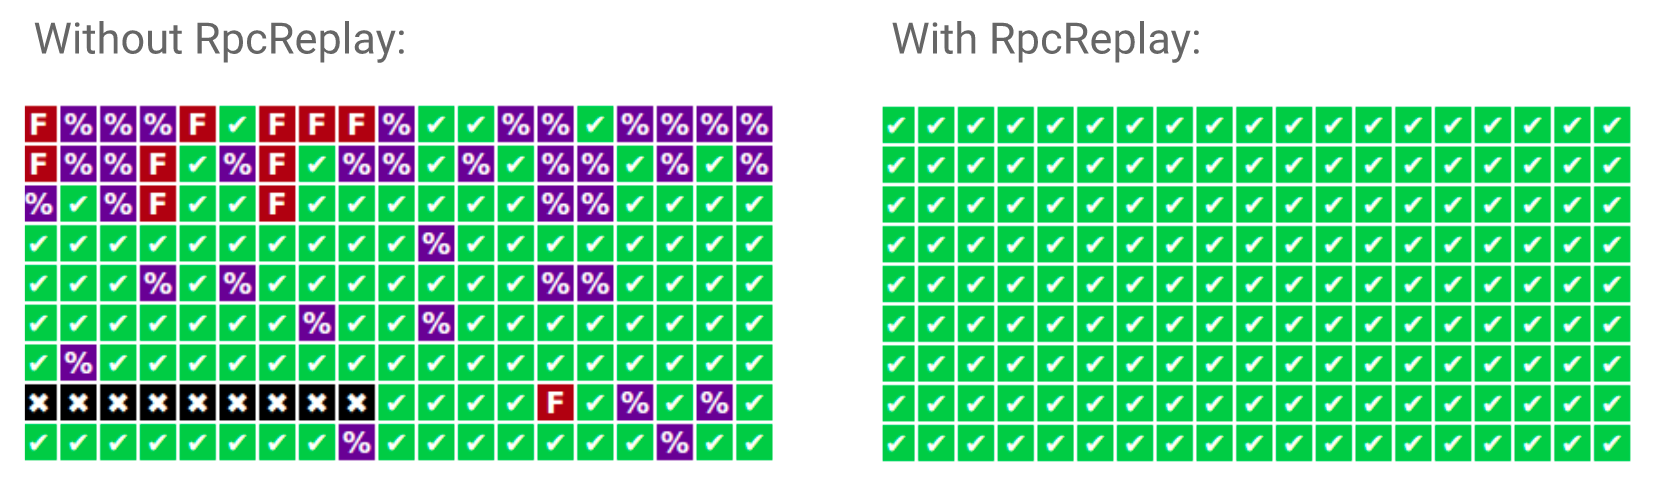 没有/有RpcReplay时的用例稳定性对比